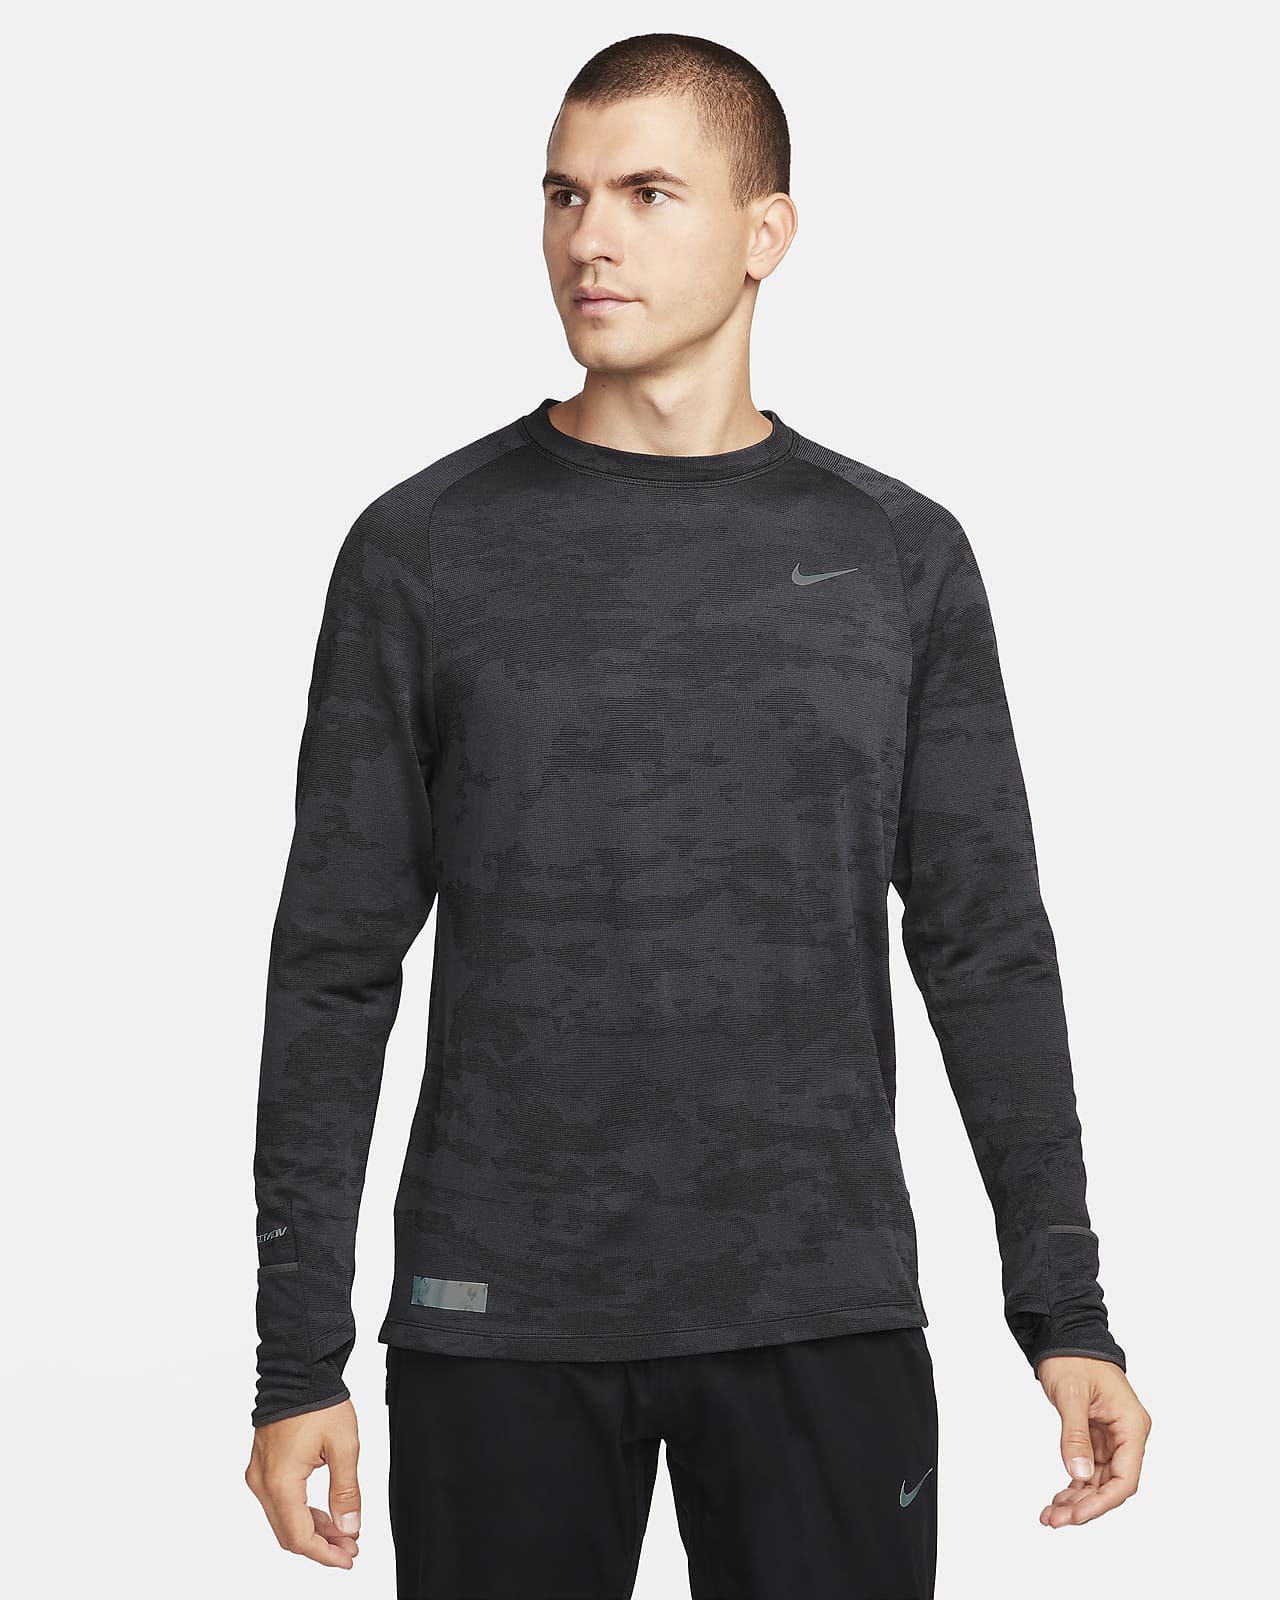 Ανδρική μακρυμάνικη μπλούζα για τρέξιμο Nike Therma-FIT ADV Running Division